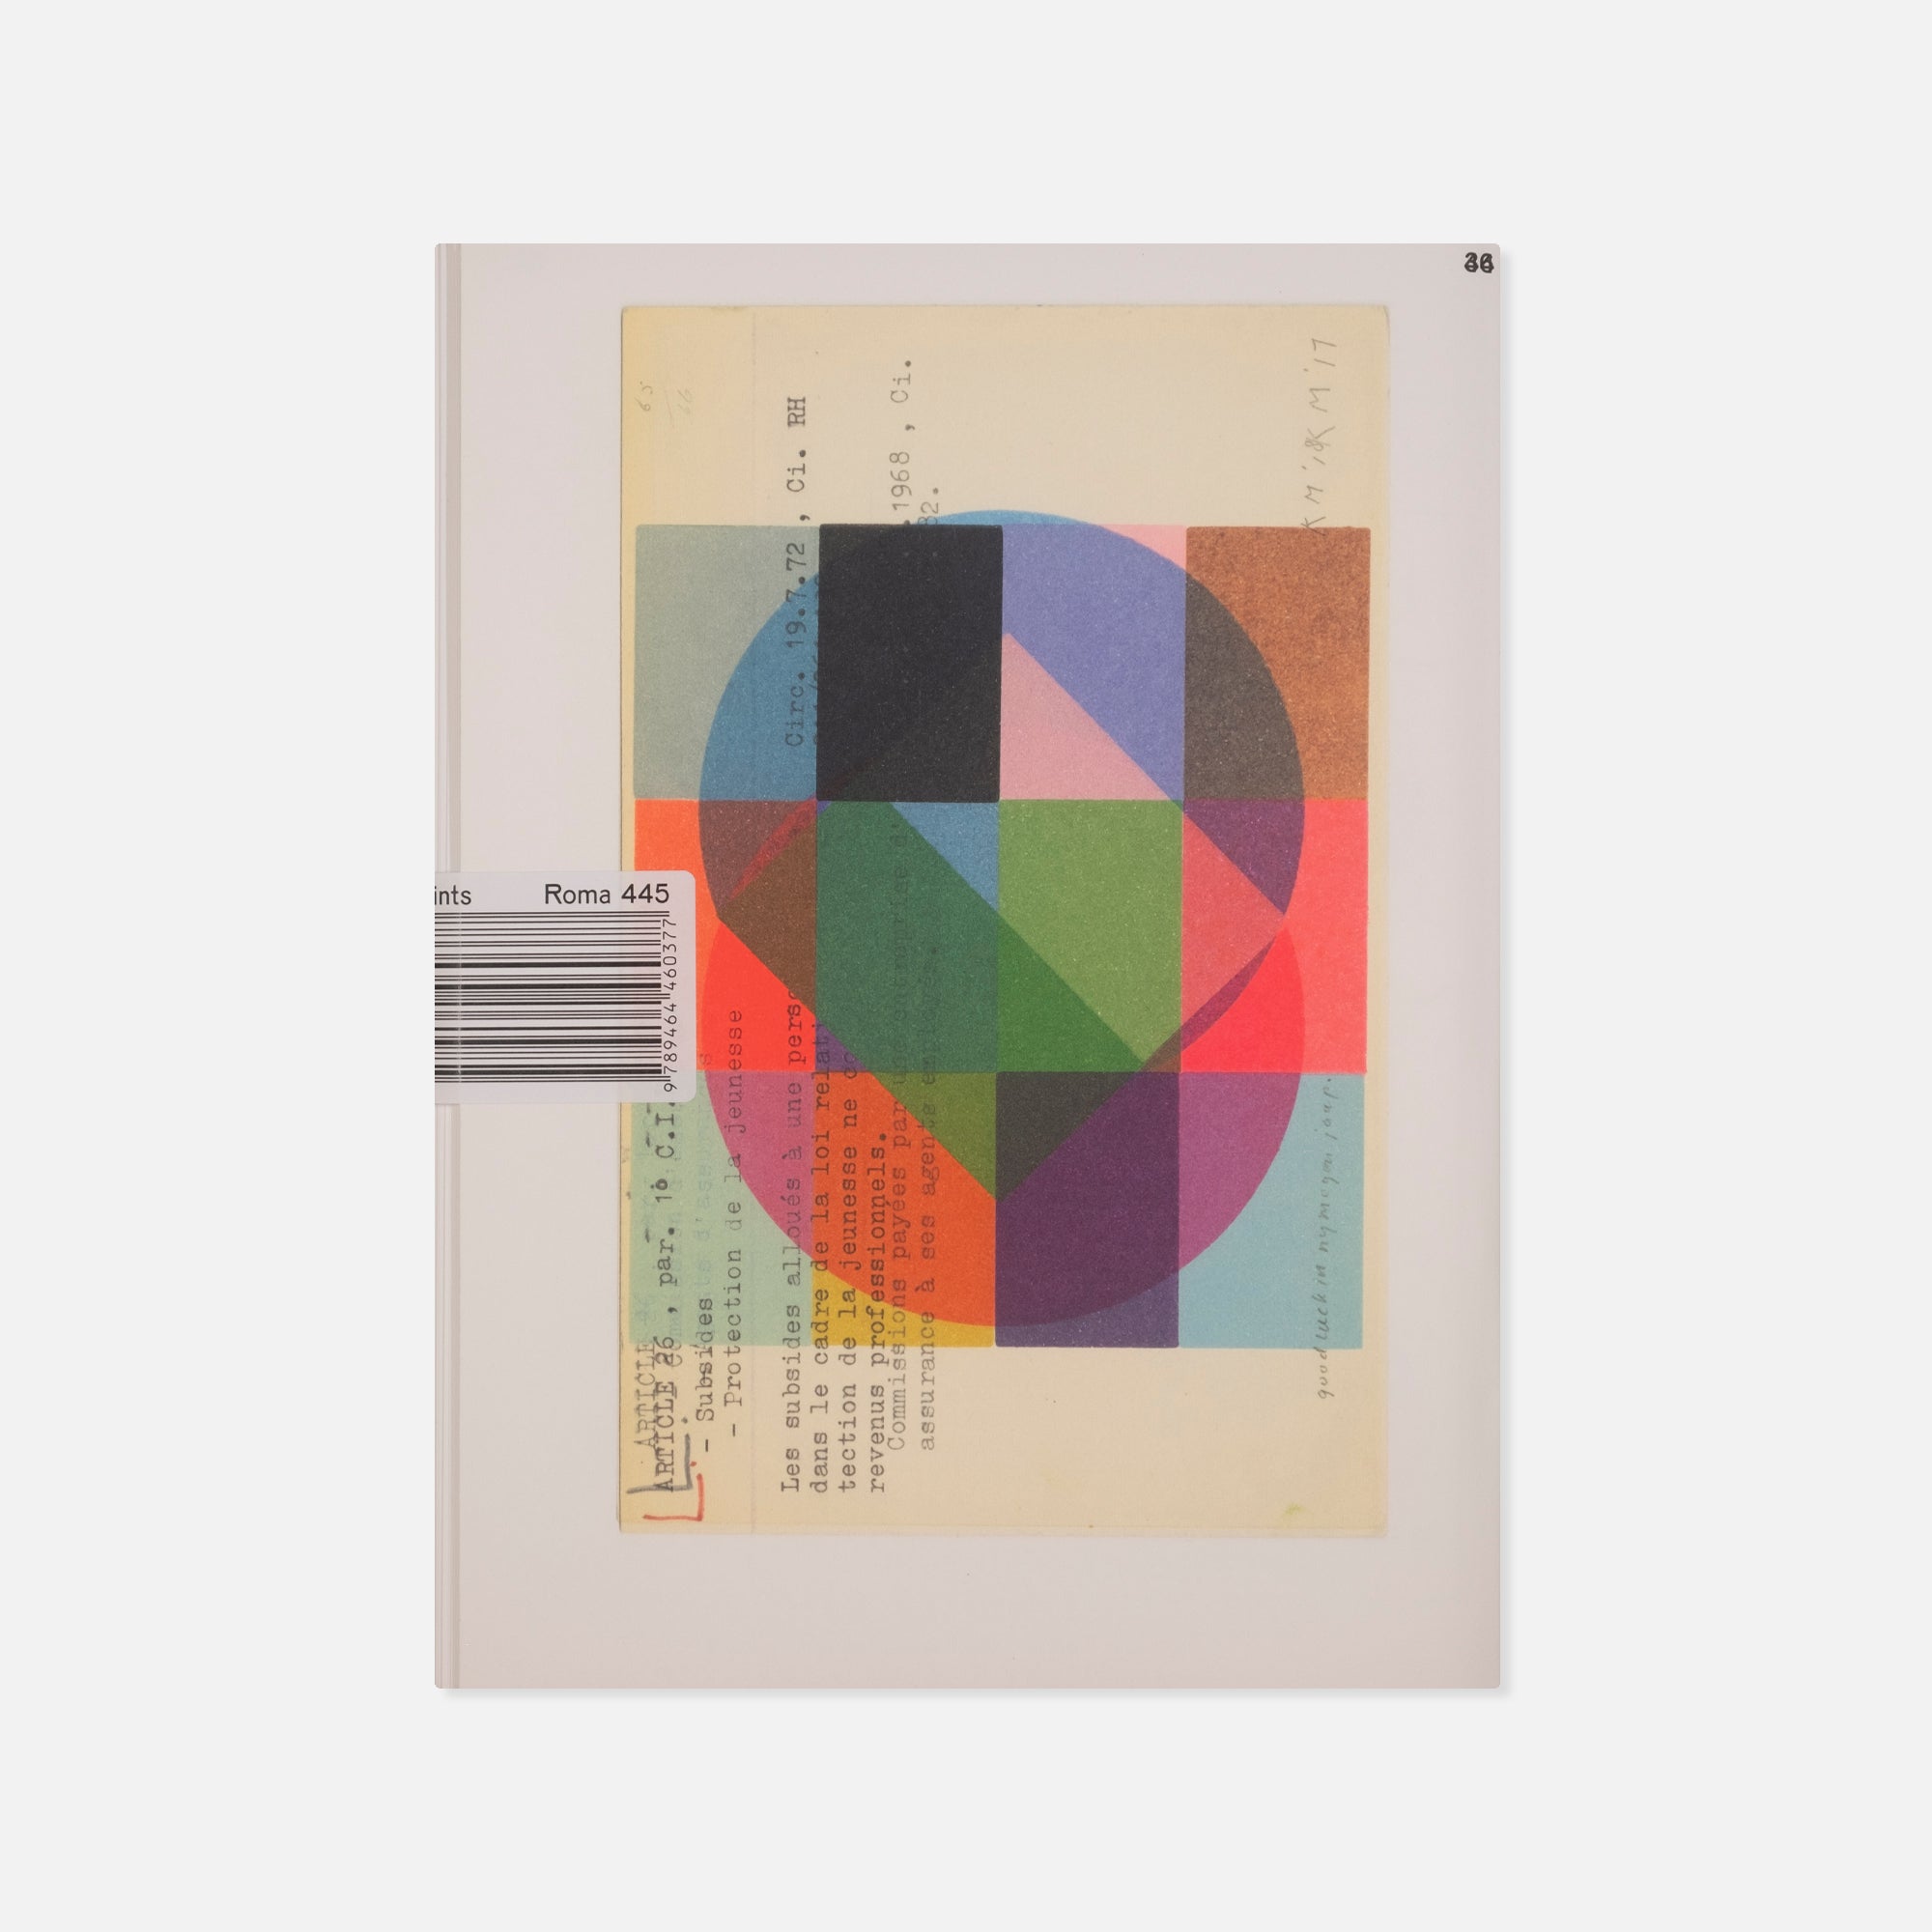 Karel Martens — Small Prints